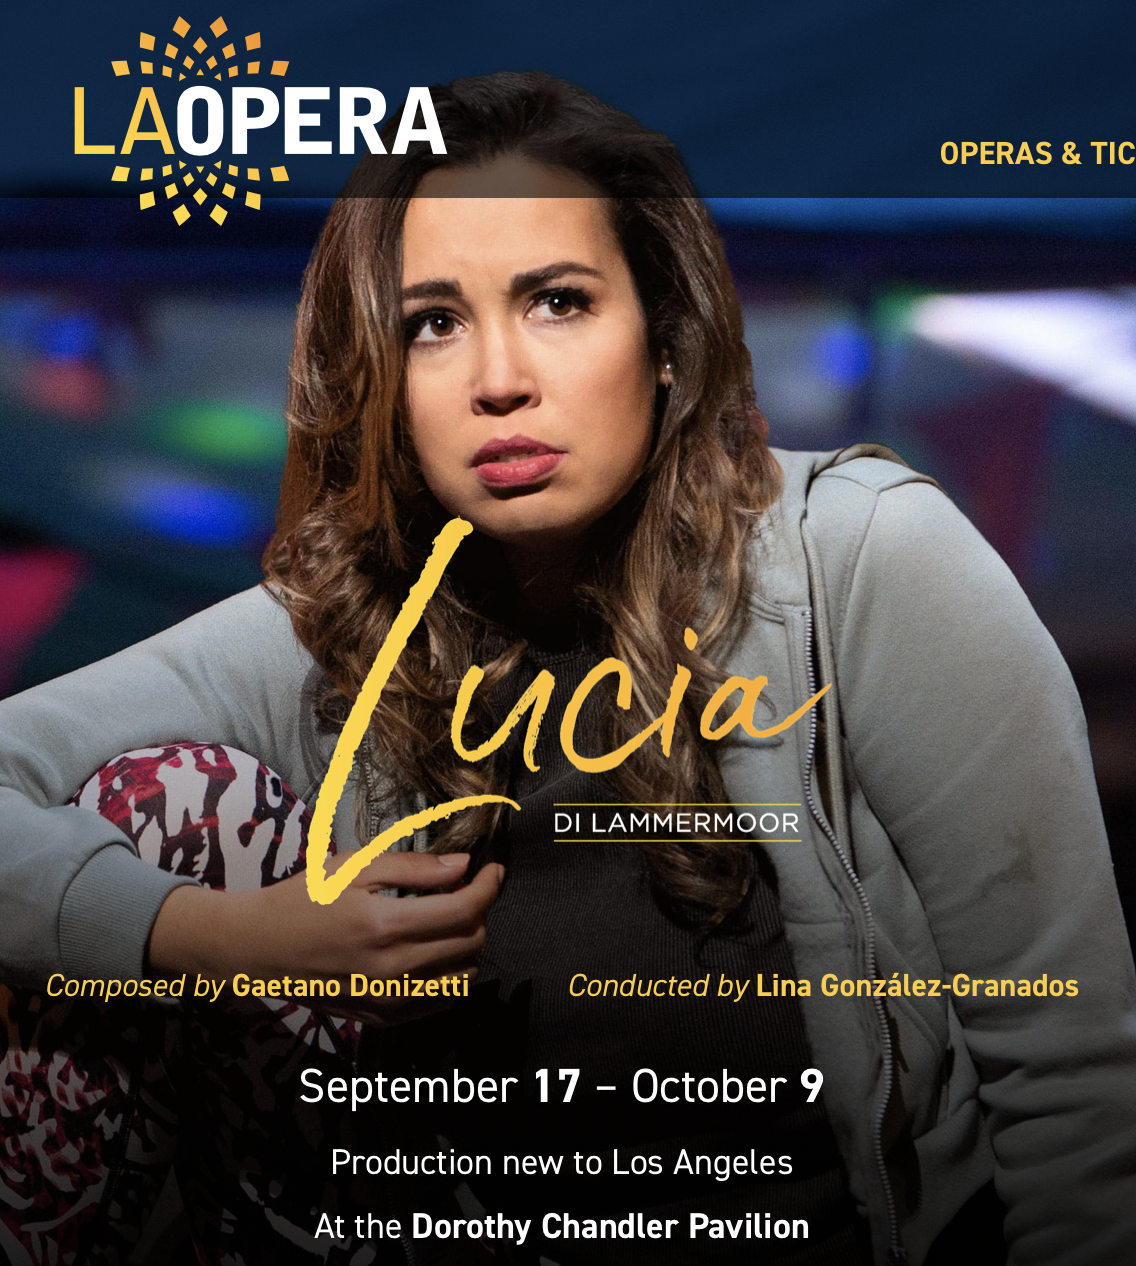 Promo image for LA Opera Lucia di Lammermoor